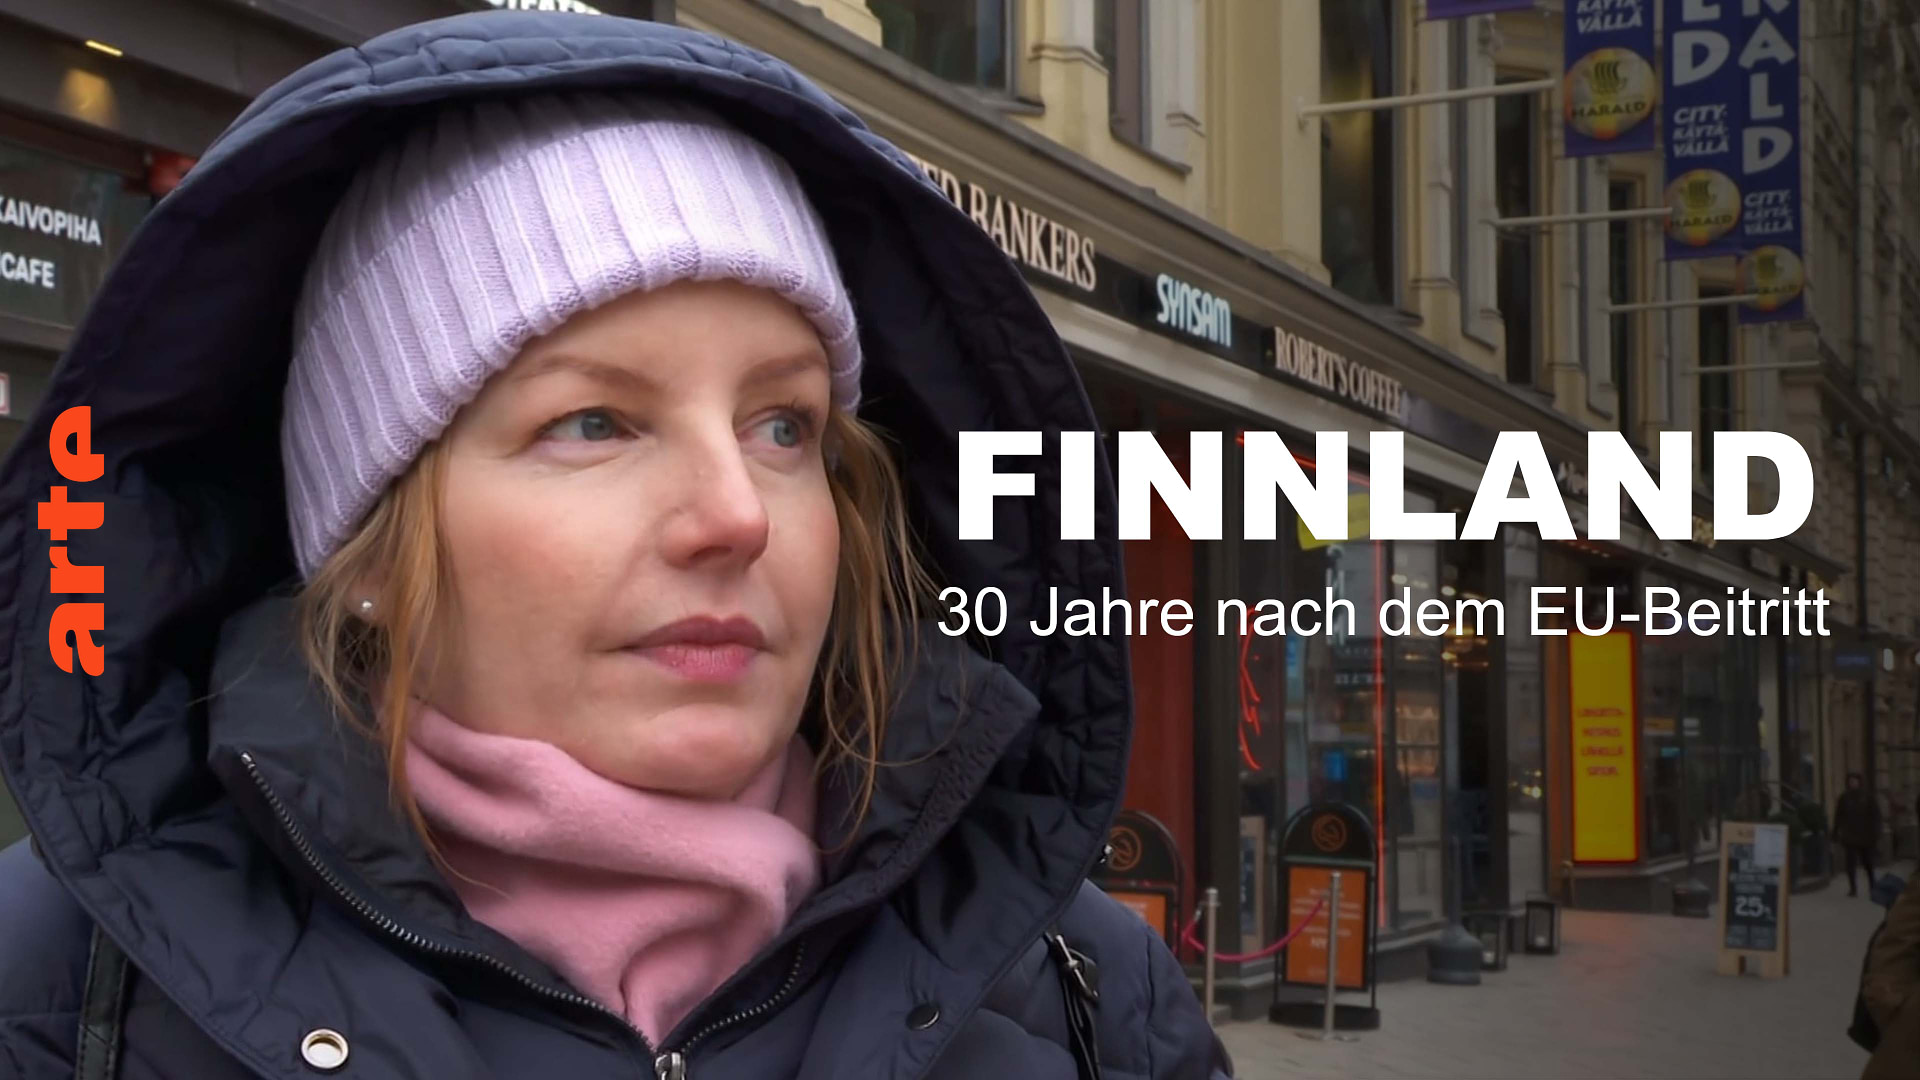 Finnland: Was denken die Finnen 30 Jahre nach dem EU-Beitritt?